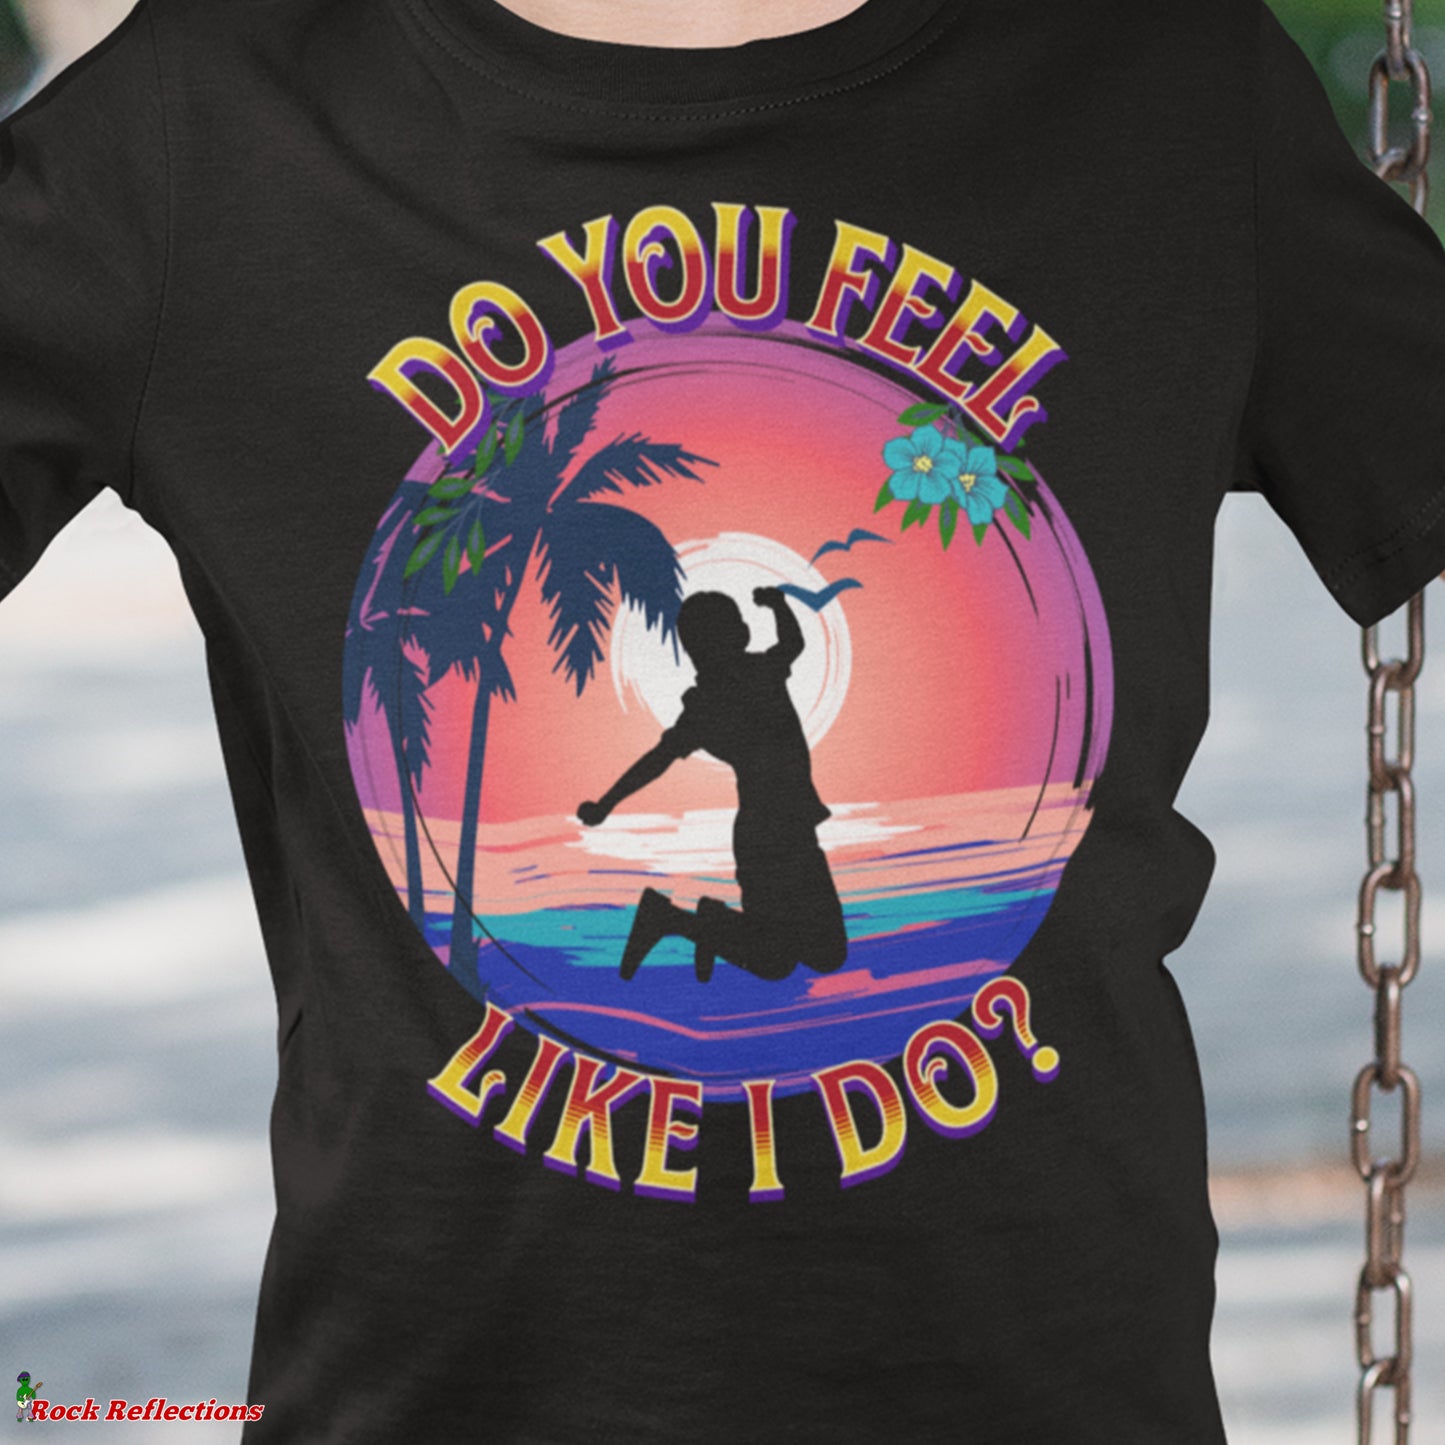 Do You Feel Like I Do? T-Shirt SPOD